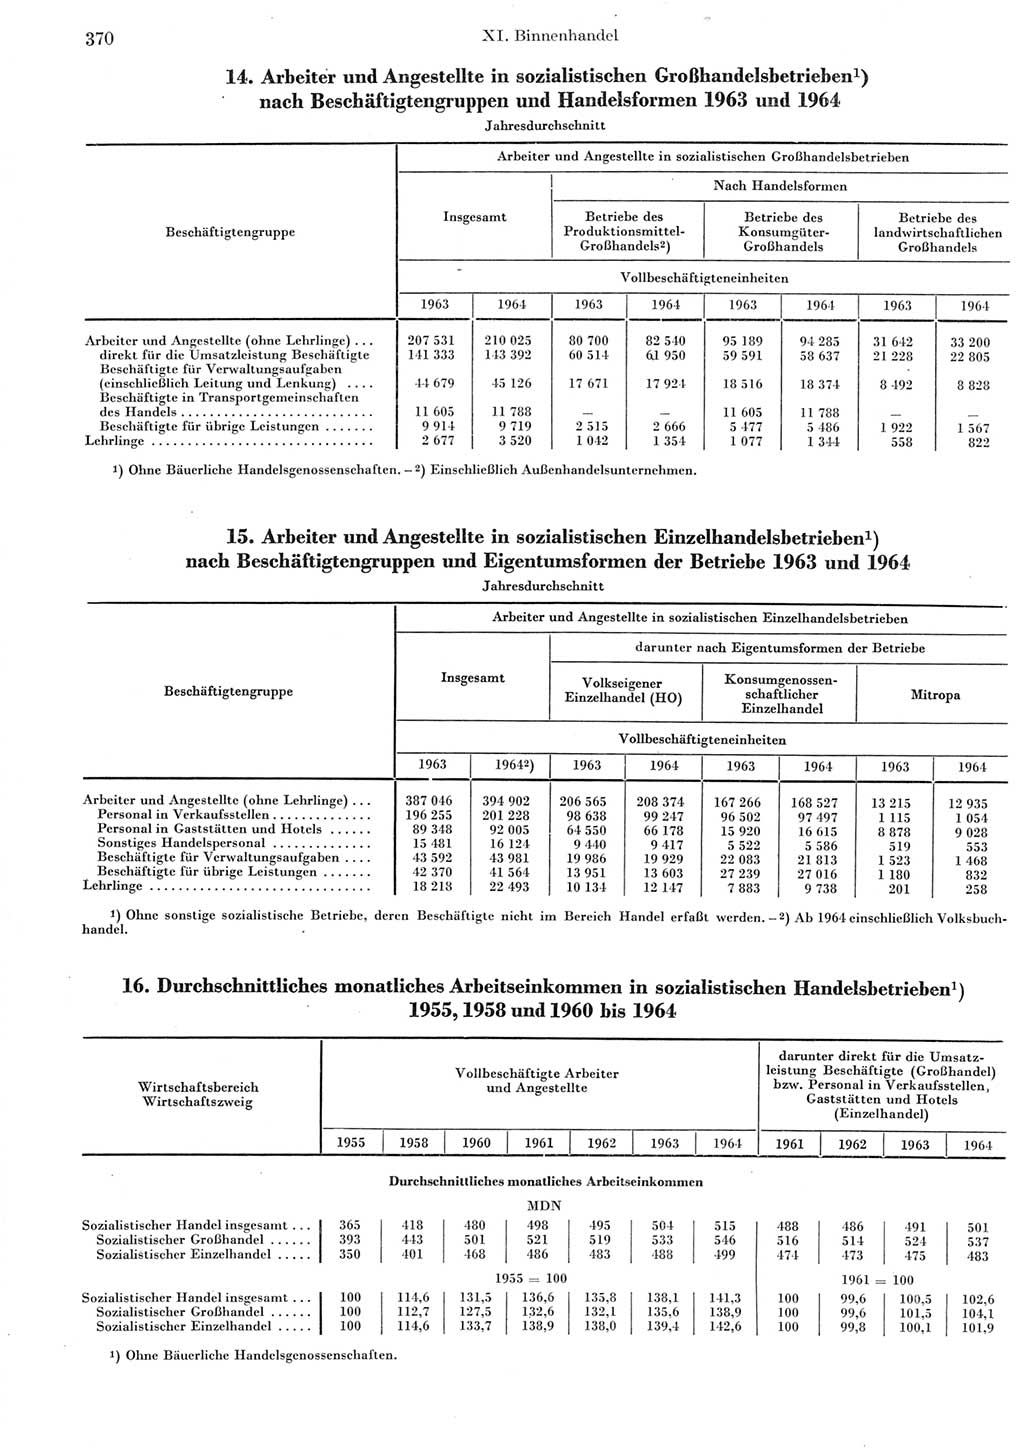 Statistisches Jahrbuch der Deutschen Demokratischen Republik (DDR) 1965, Seite 370 (Stat. Jb. DDR 1965, S. 370)